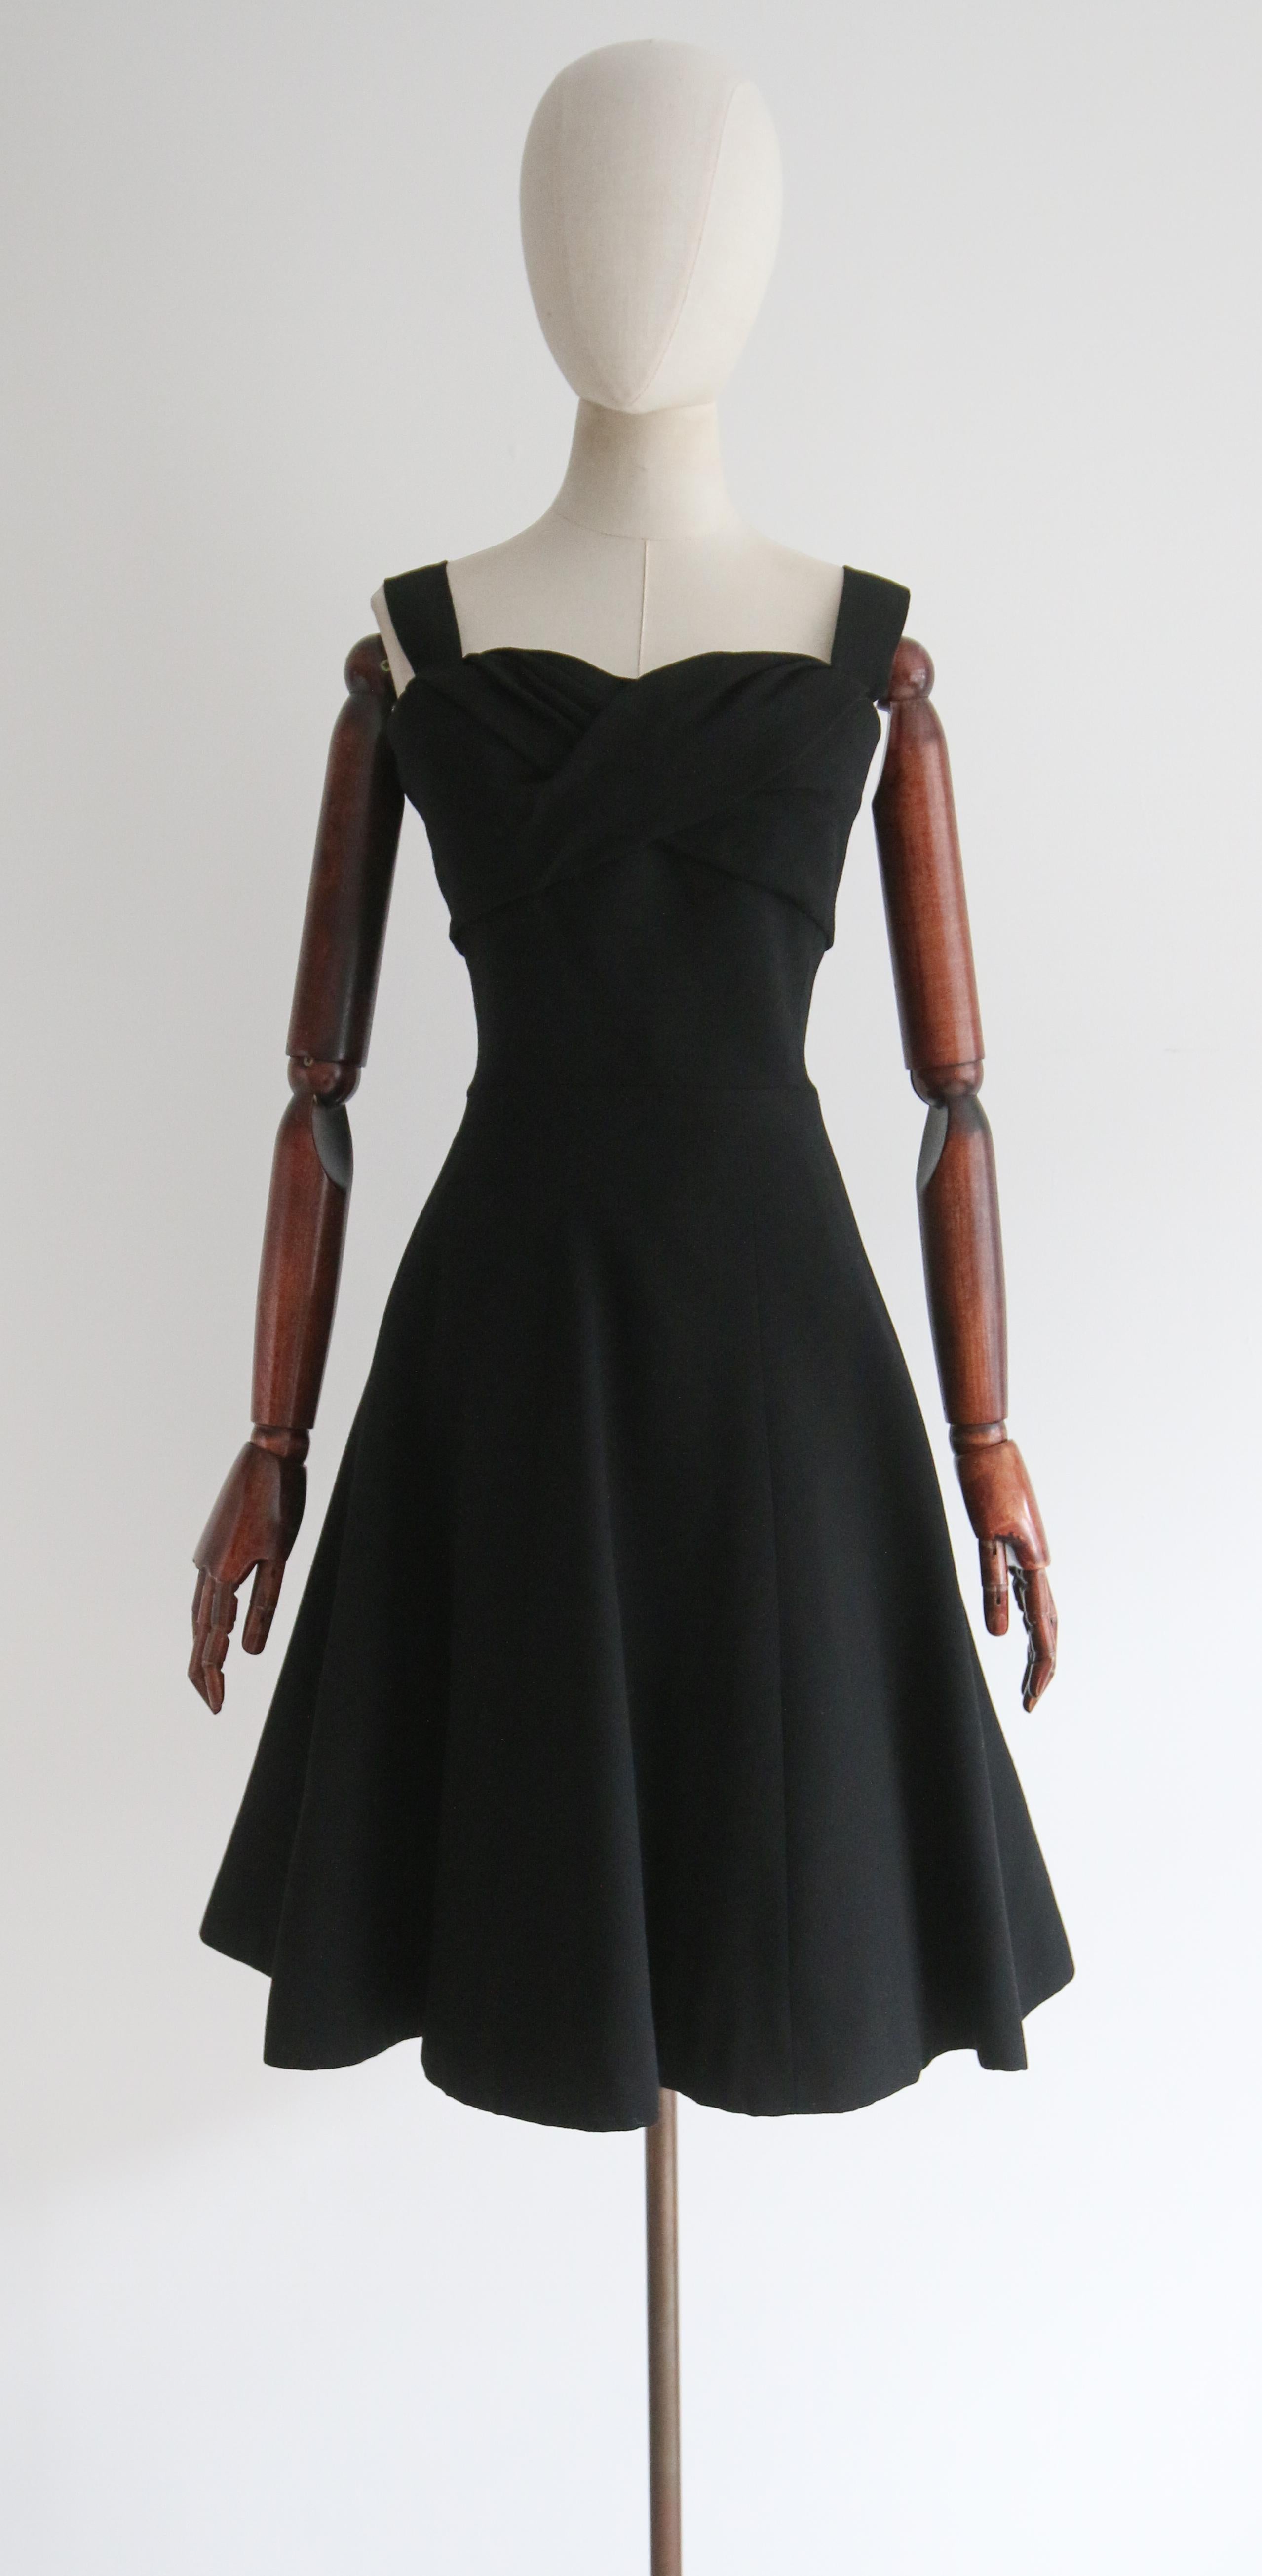 Cette robe de collection et rare de Christian Dior de la fin des années 1950, réalisée dans un crêpe de laine d'un noir profond, met en valeur la silhouette emblématique de l'époque, tout en restant à ce jour un modèle classique et intemporel.